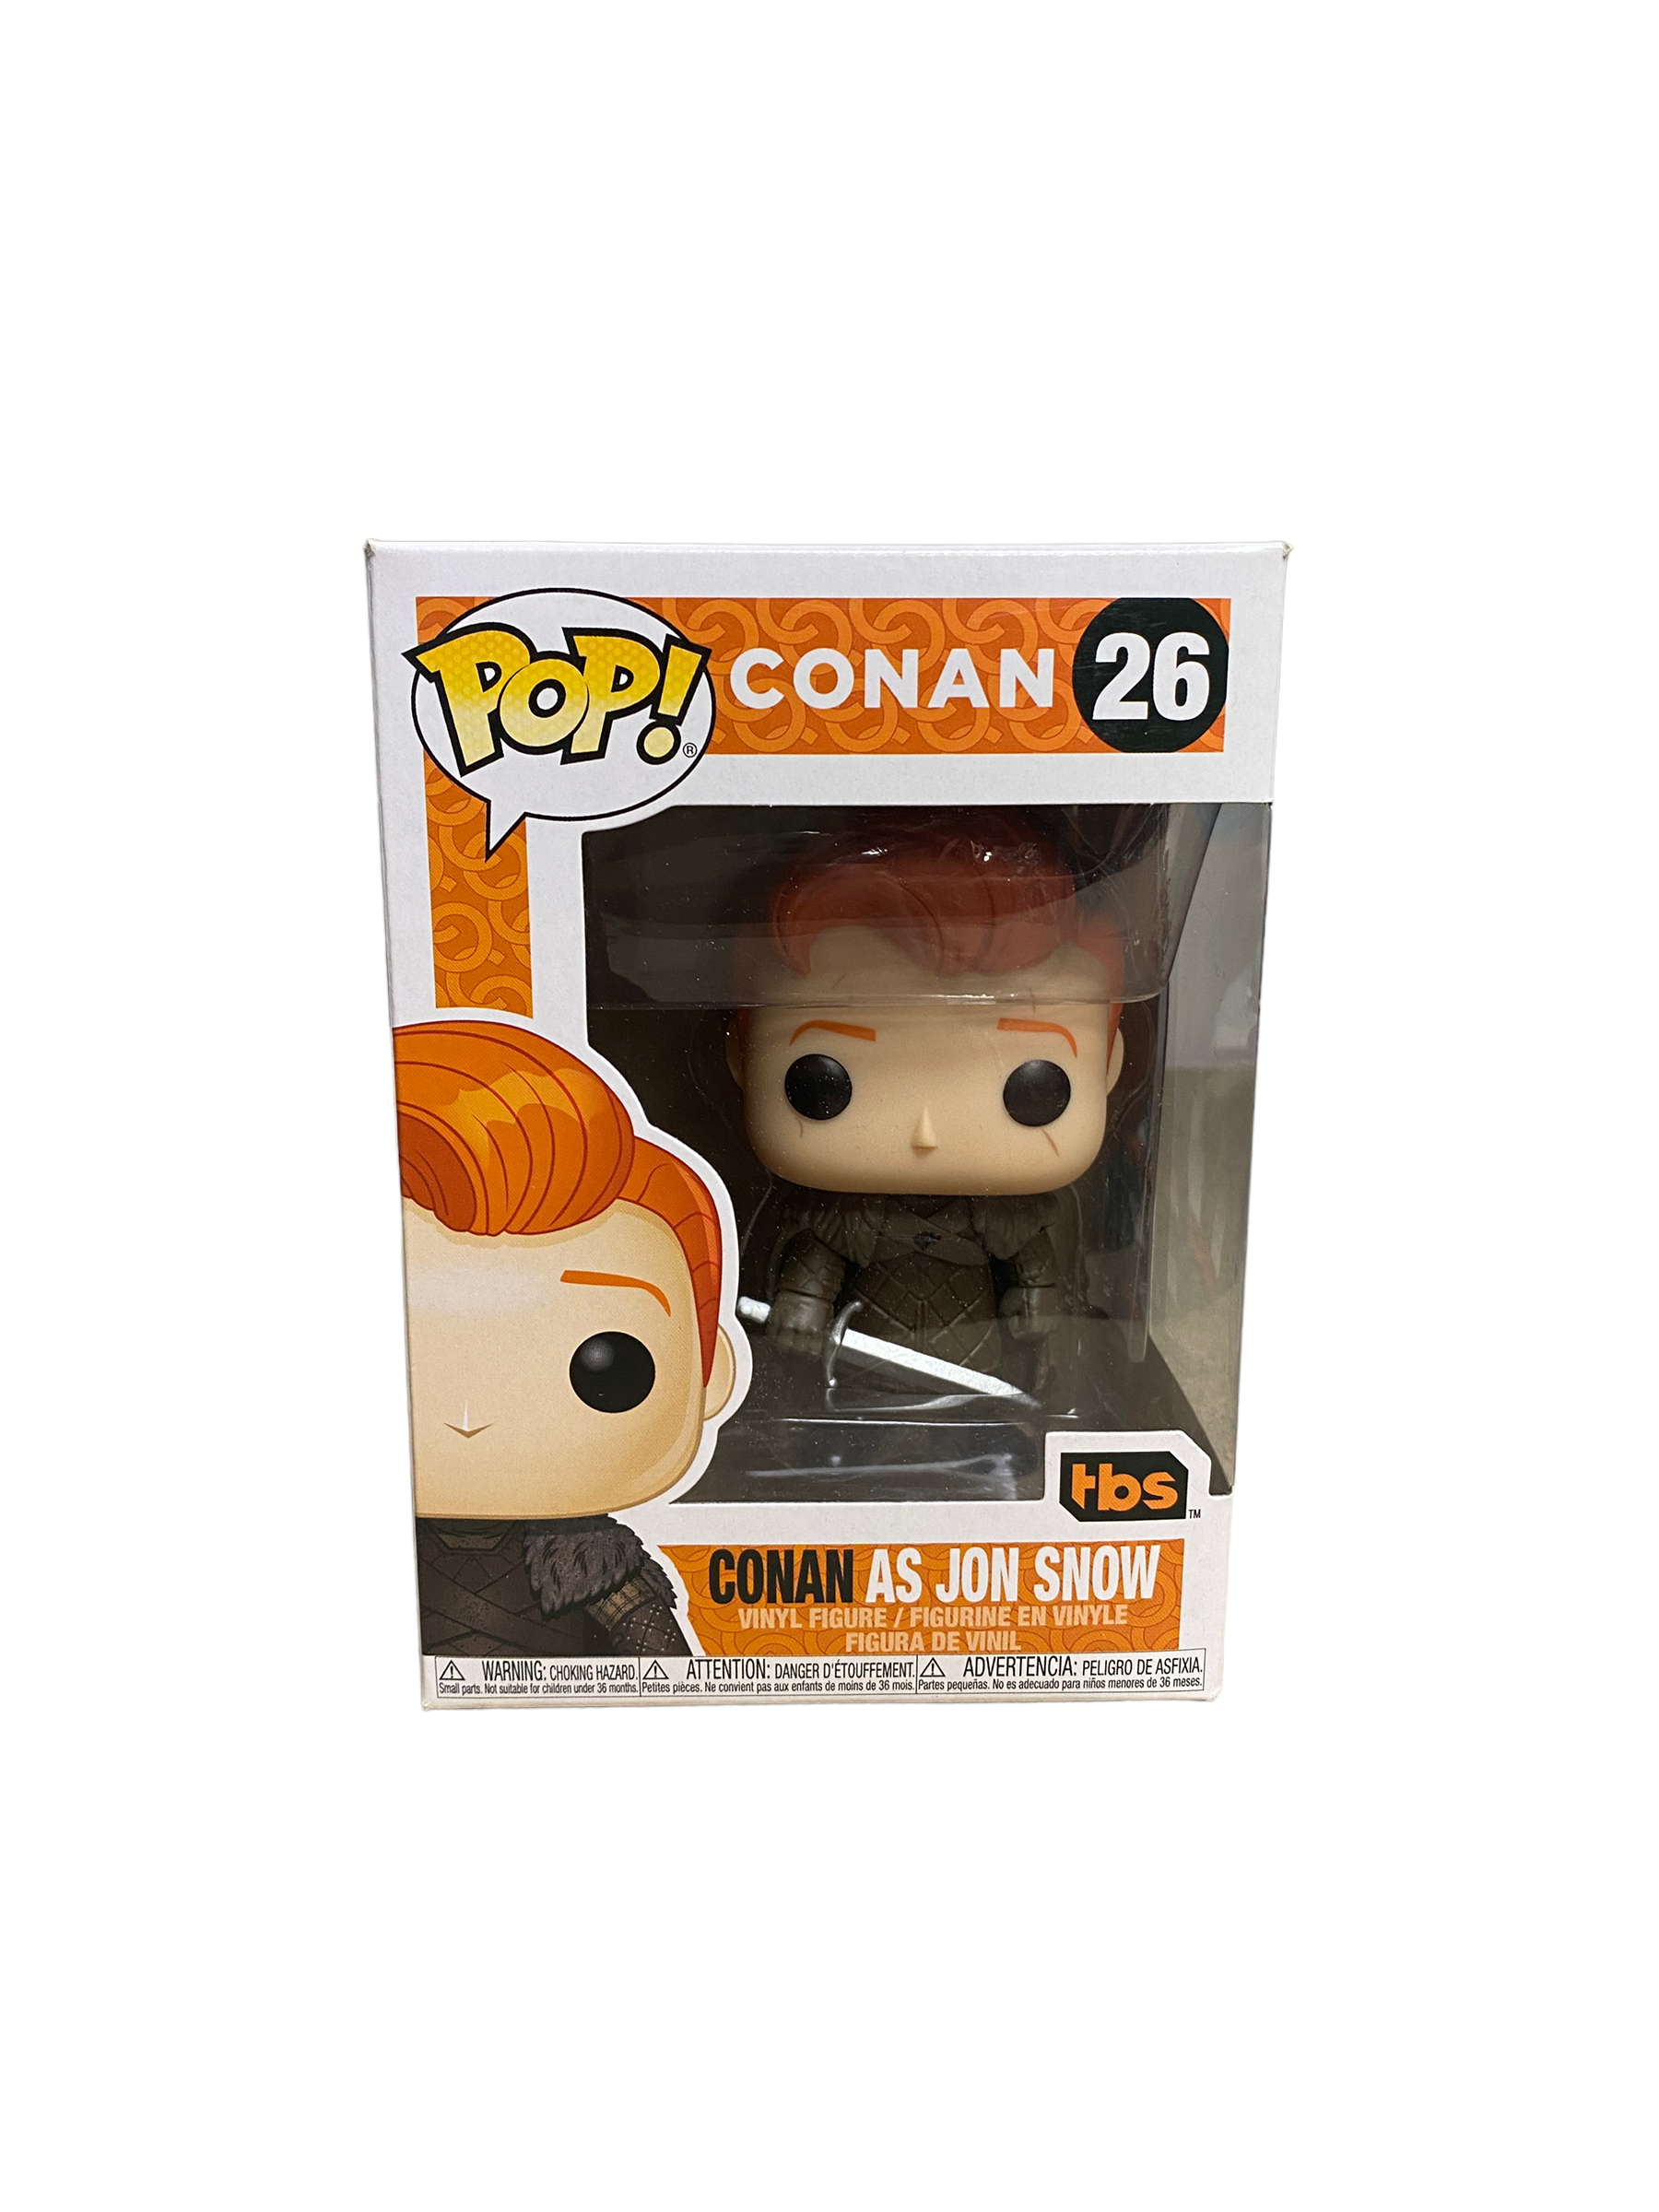 Conan As Jon Snow #26 Funko Pop! - Conan / Game Of Thrones - SDCC 2019 Exclusive - Condition 7.5/10